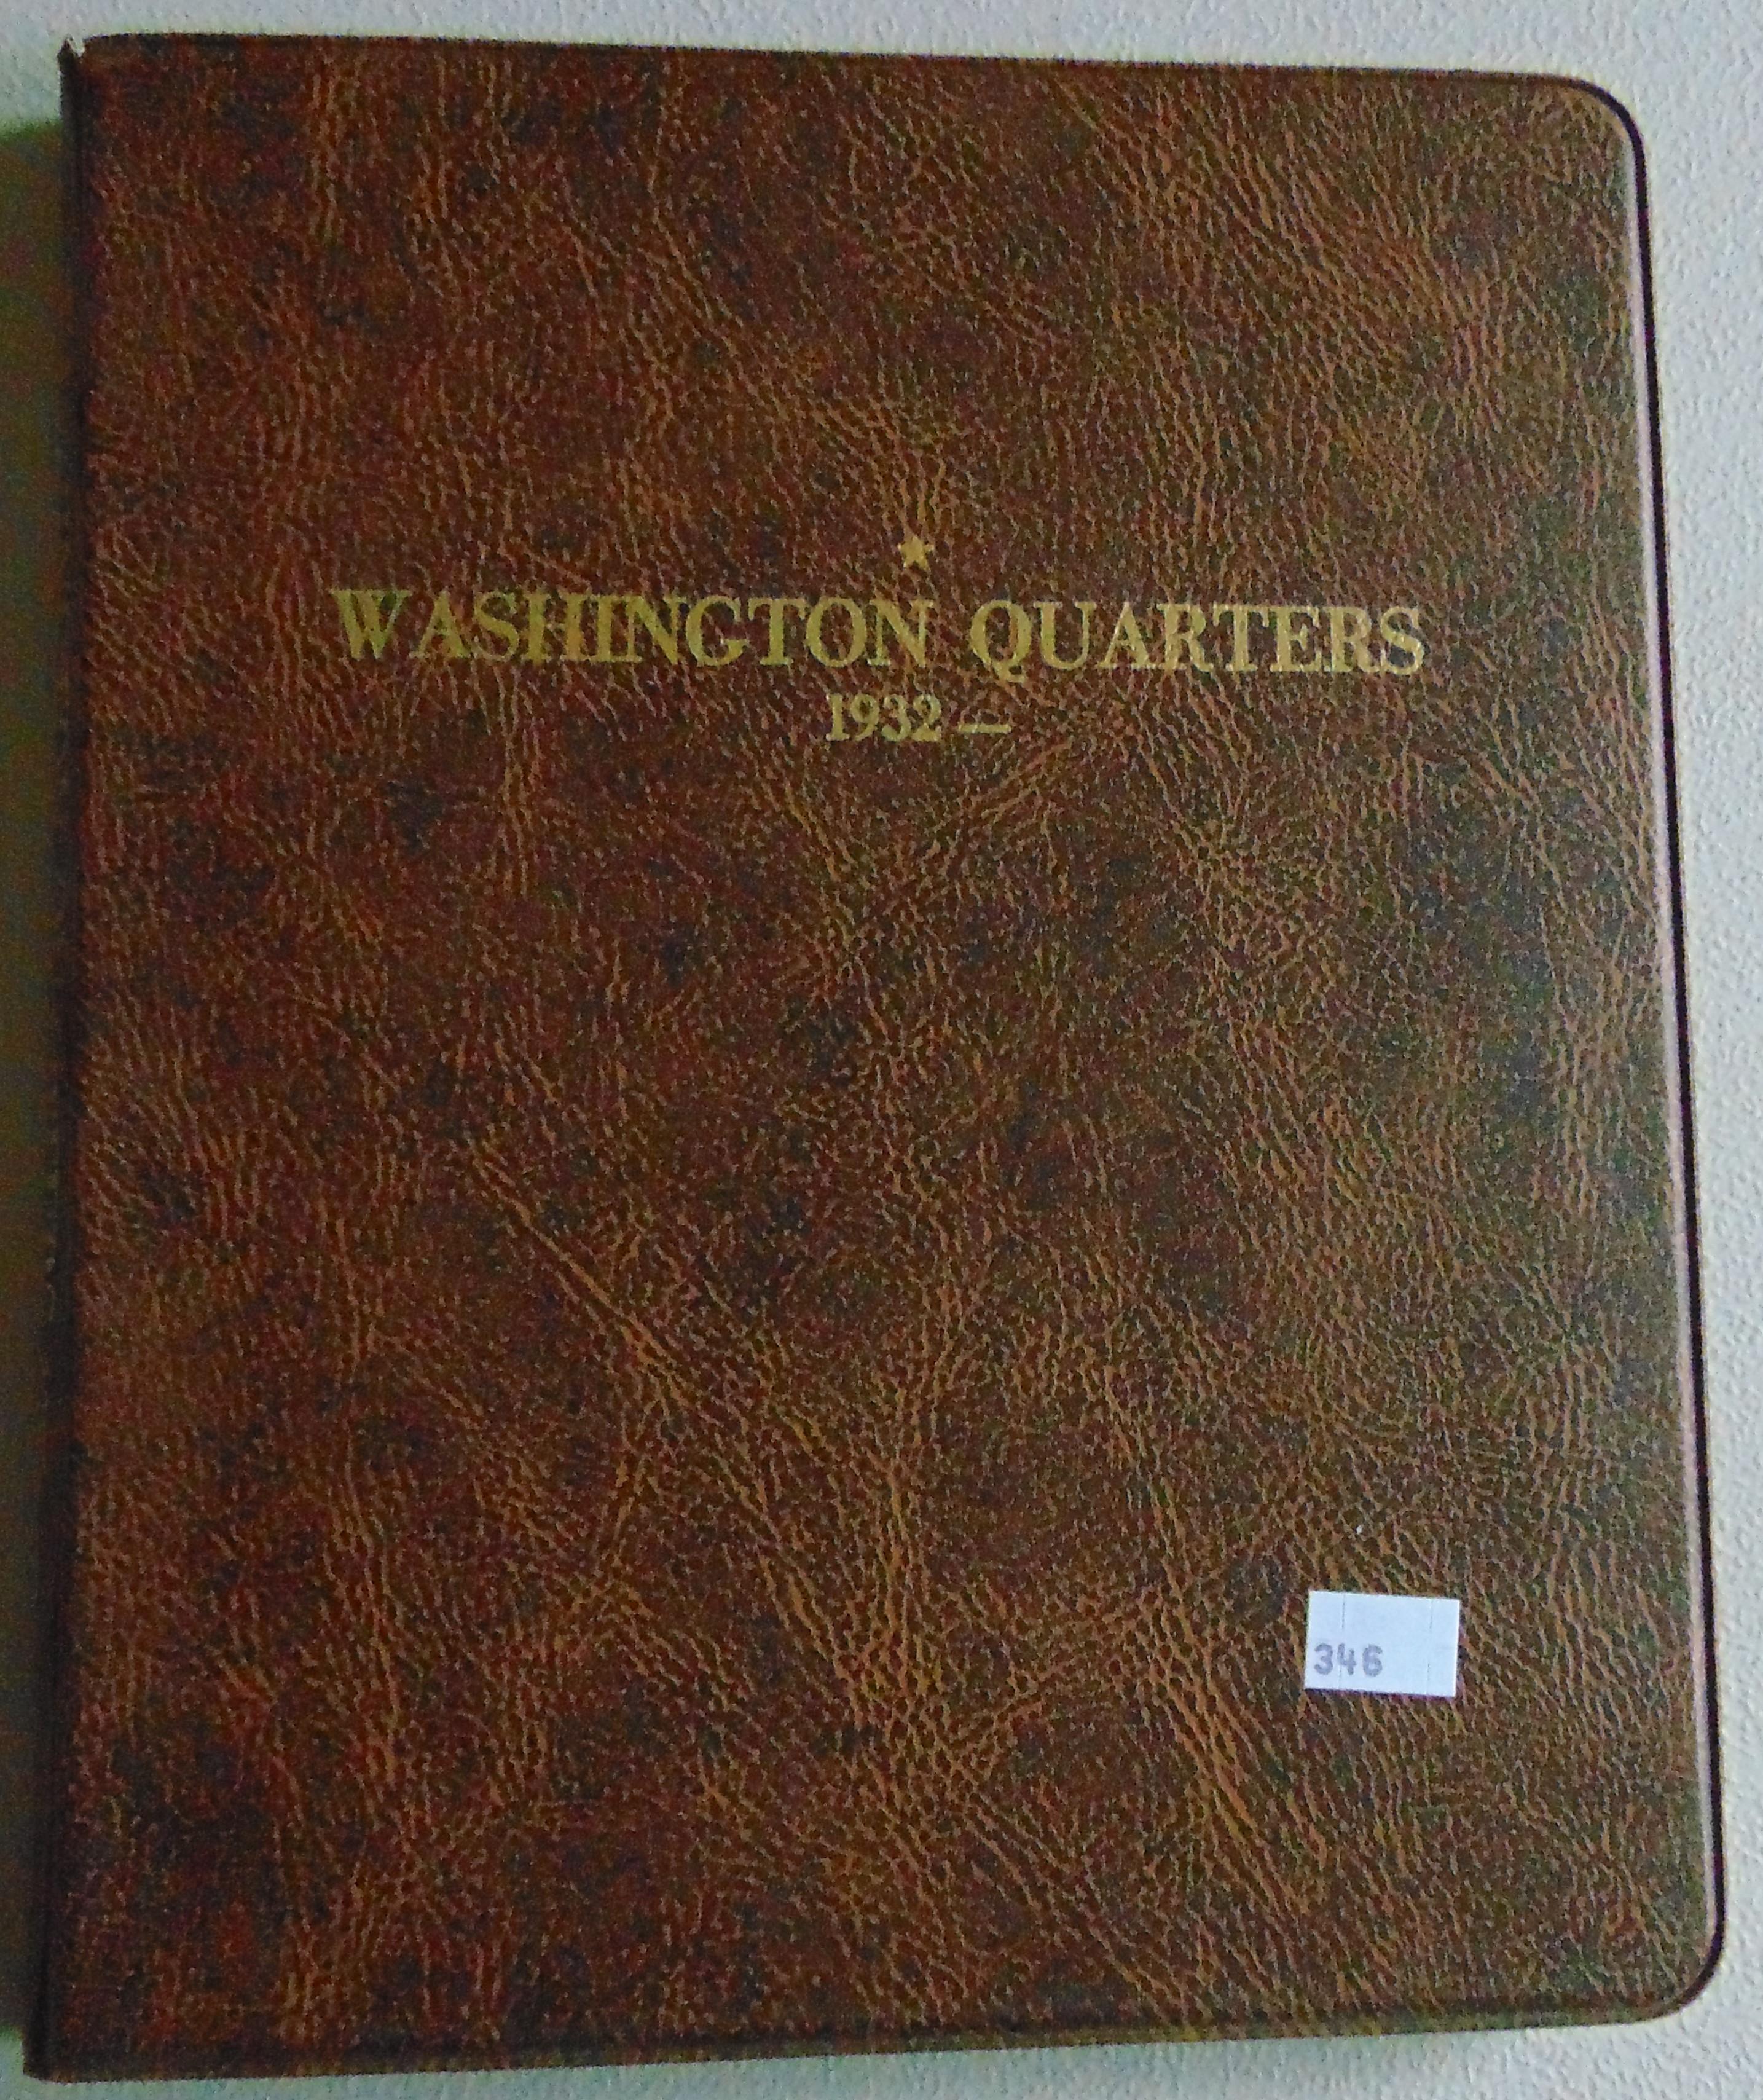 93 Washington clad Quarters & 5 Sacagawea Dollars